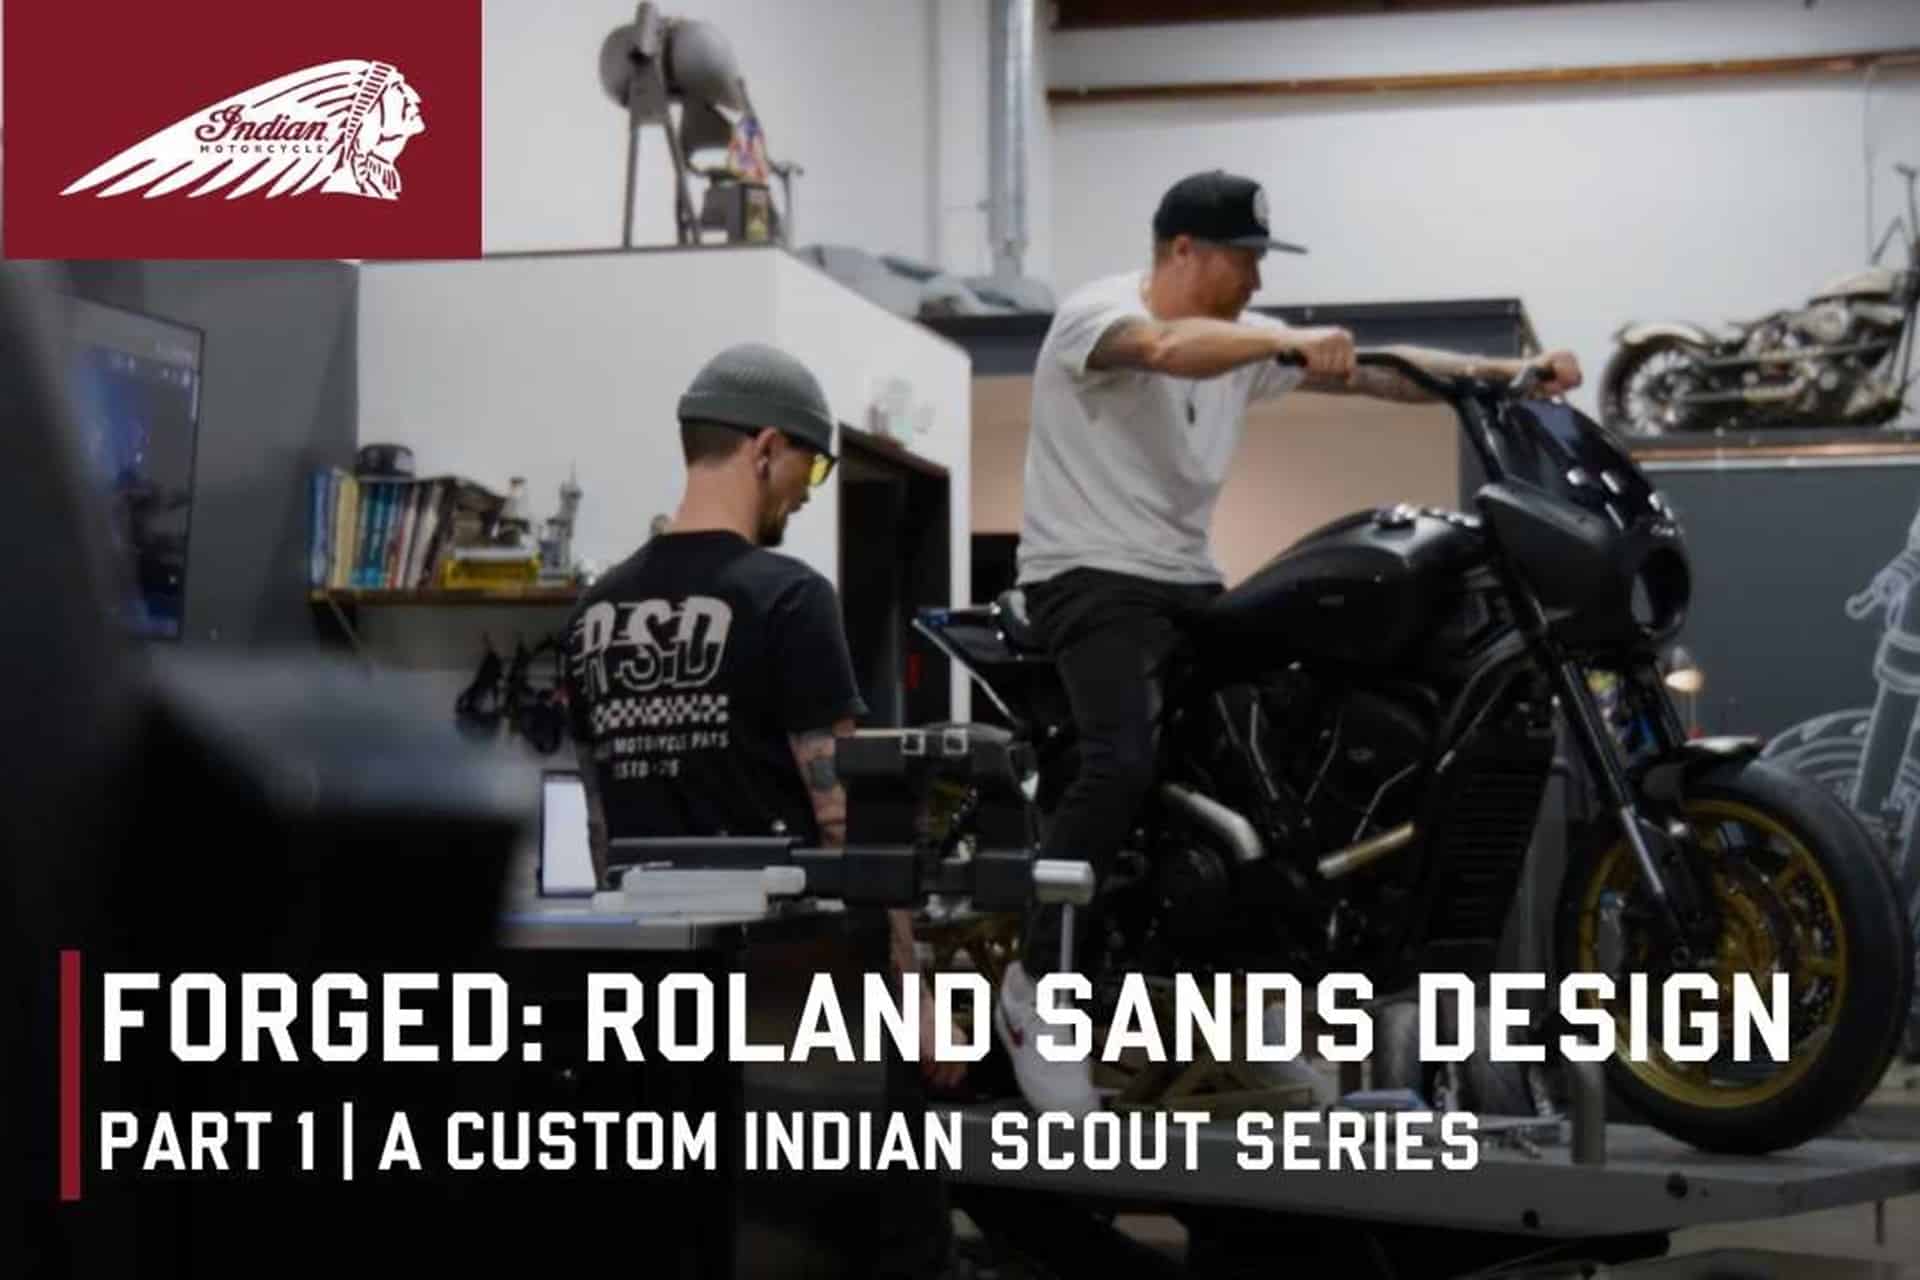 Regresa la serie "Forged" de Indian Motorcycle con la nueva Indian Scout 2025 como protagonista